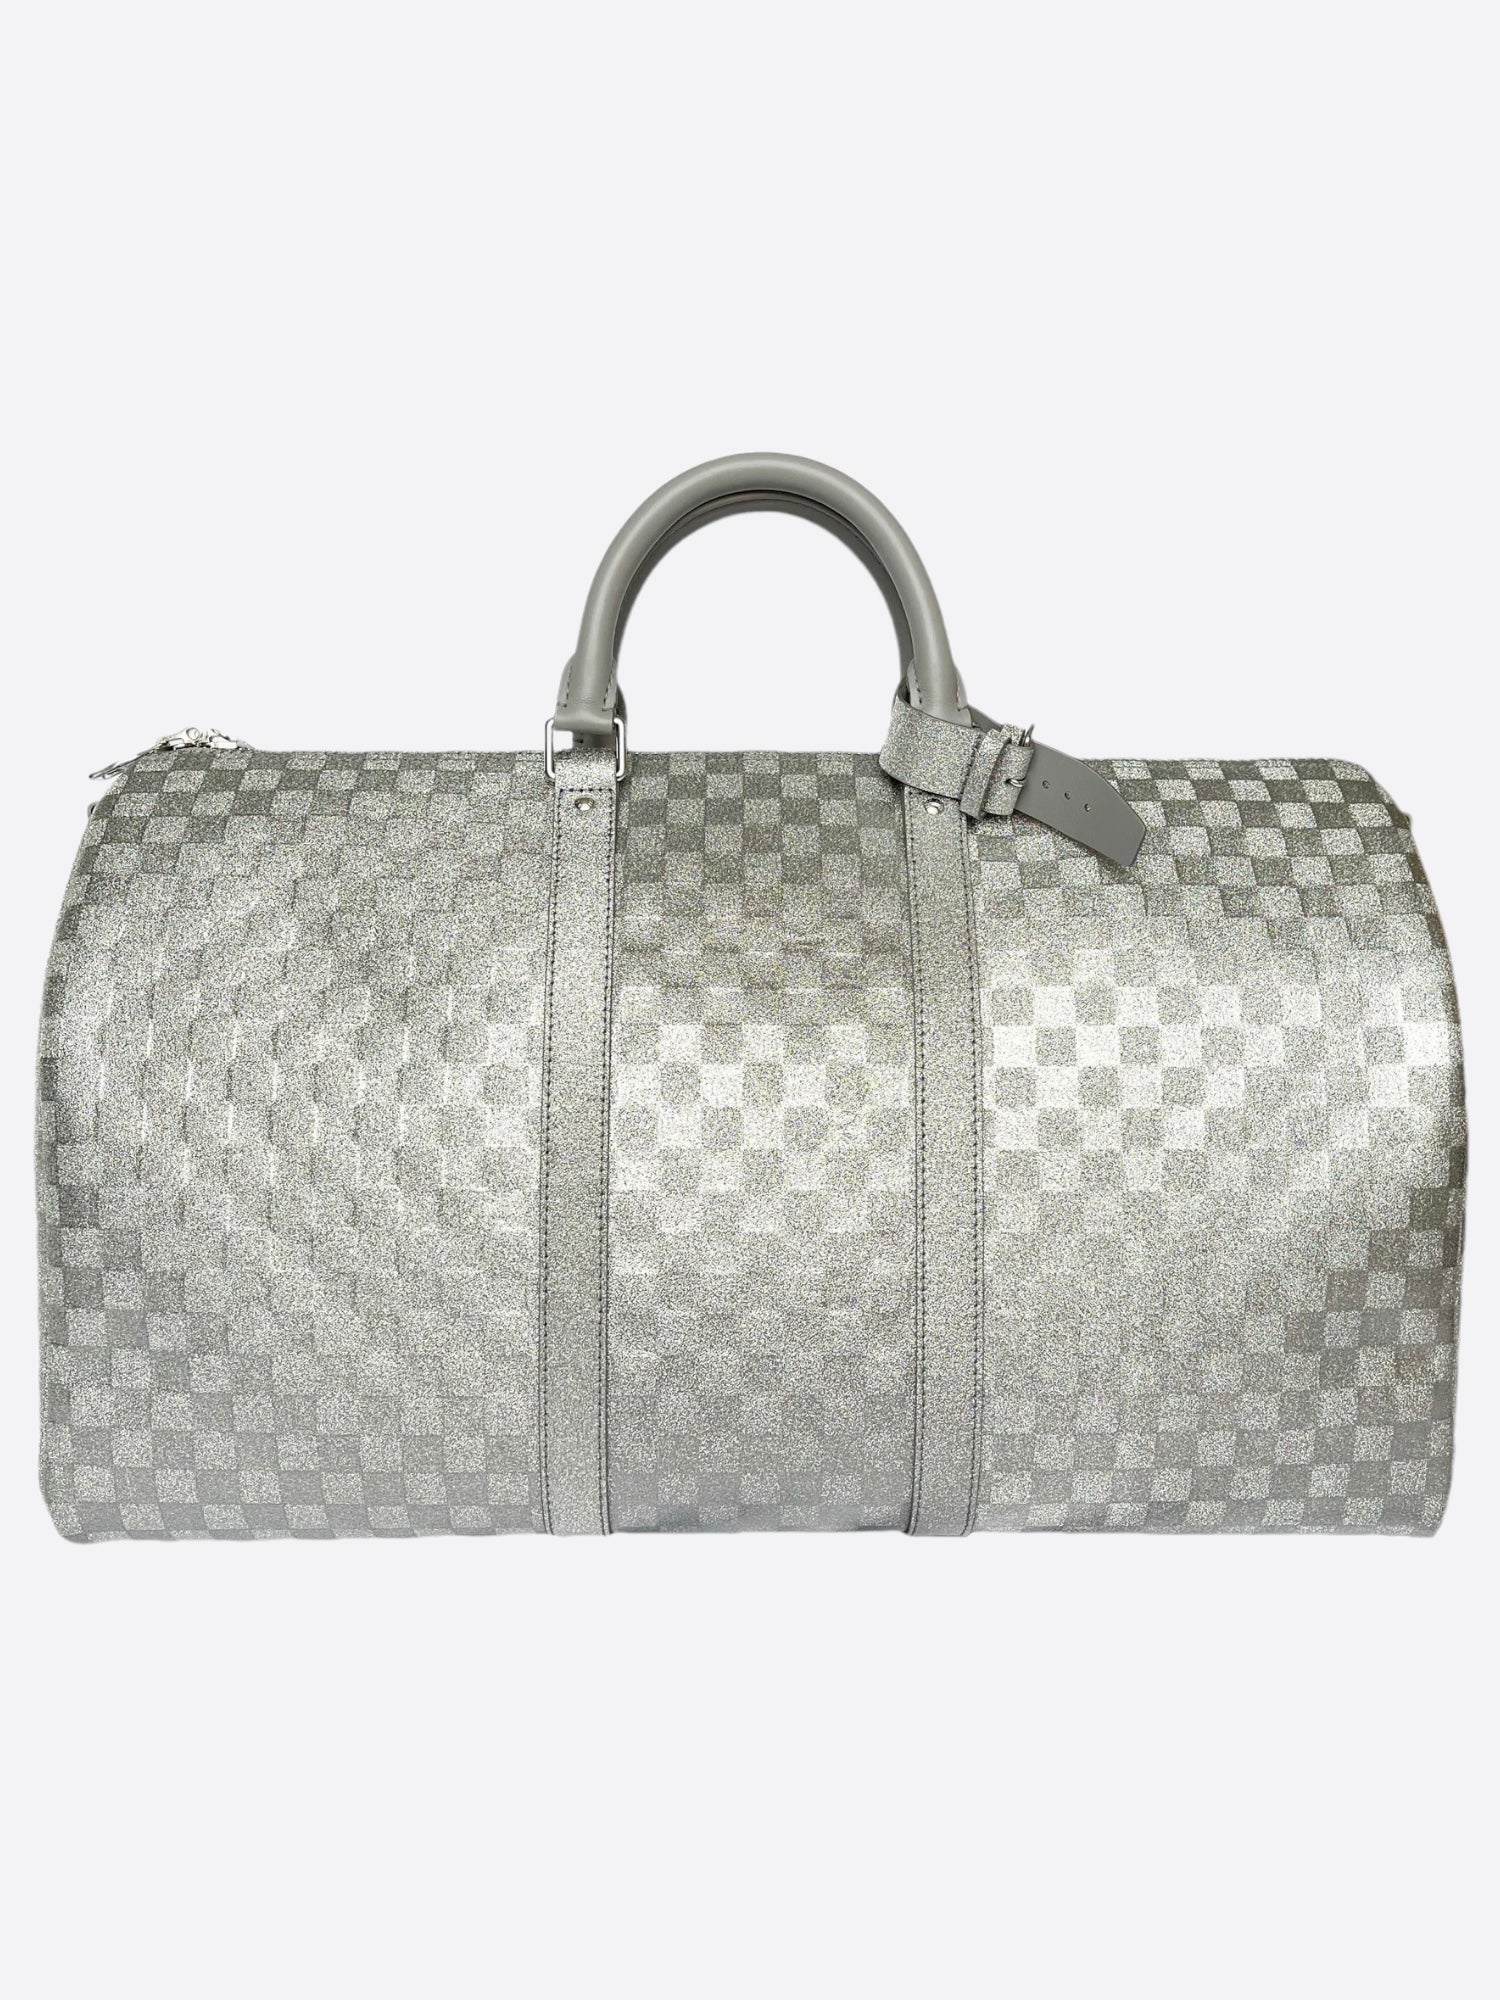 Louis Vuitton Silver Glitter Keepall 50